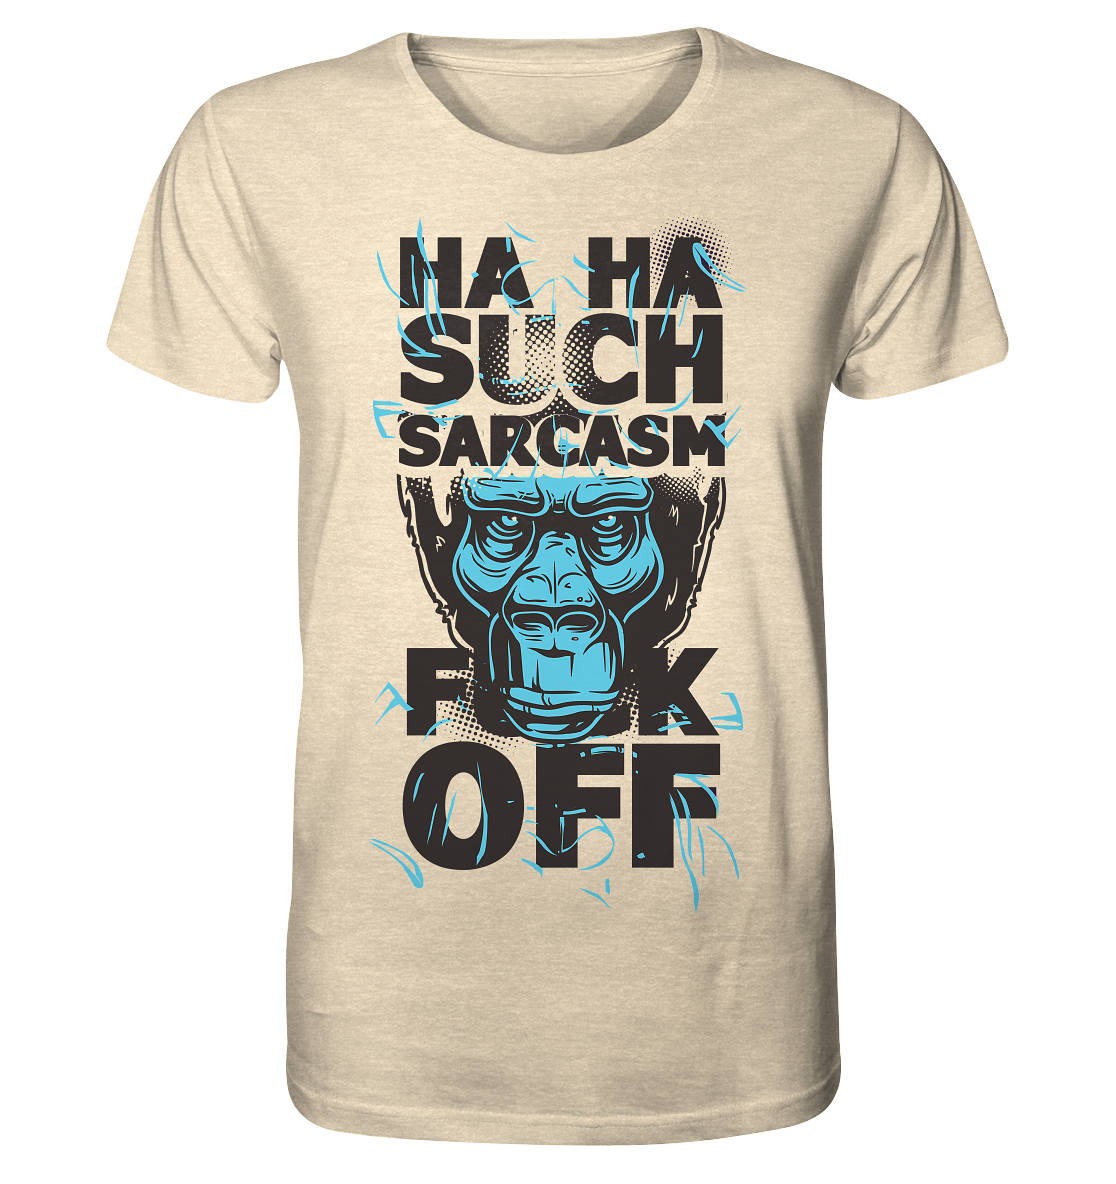 SUCH SARCASM F**K OFF - Organic Shirt